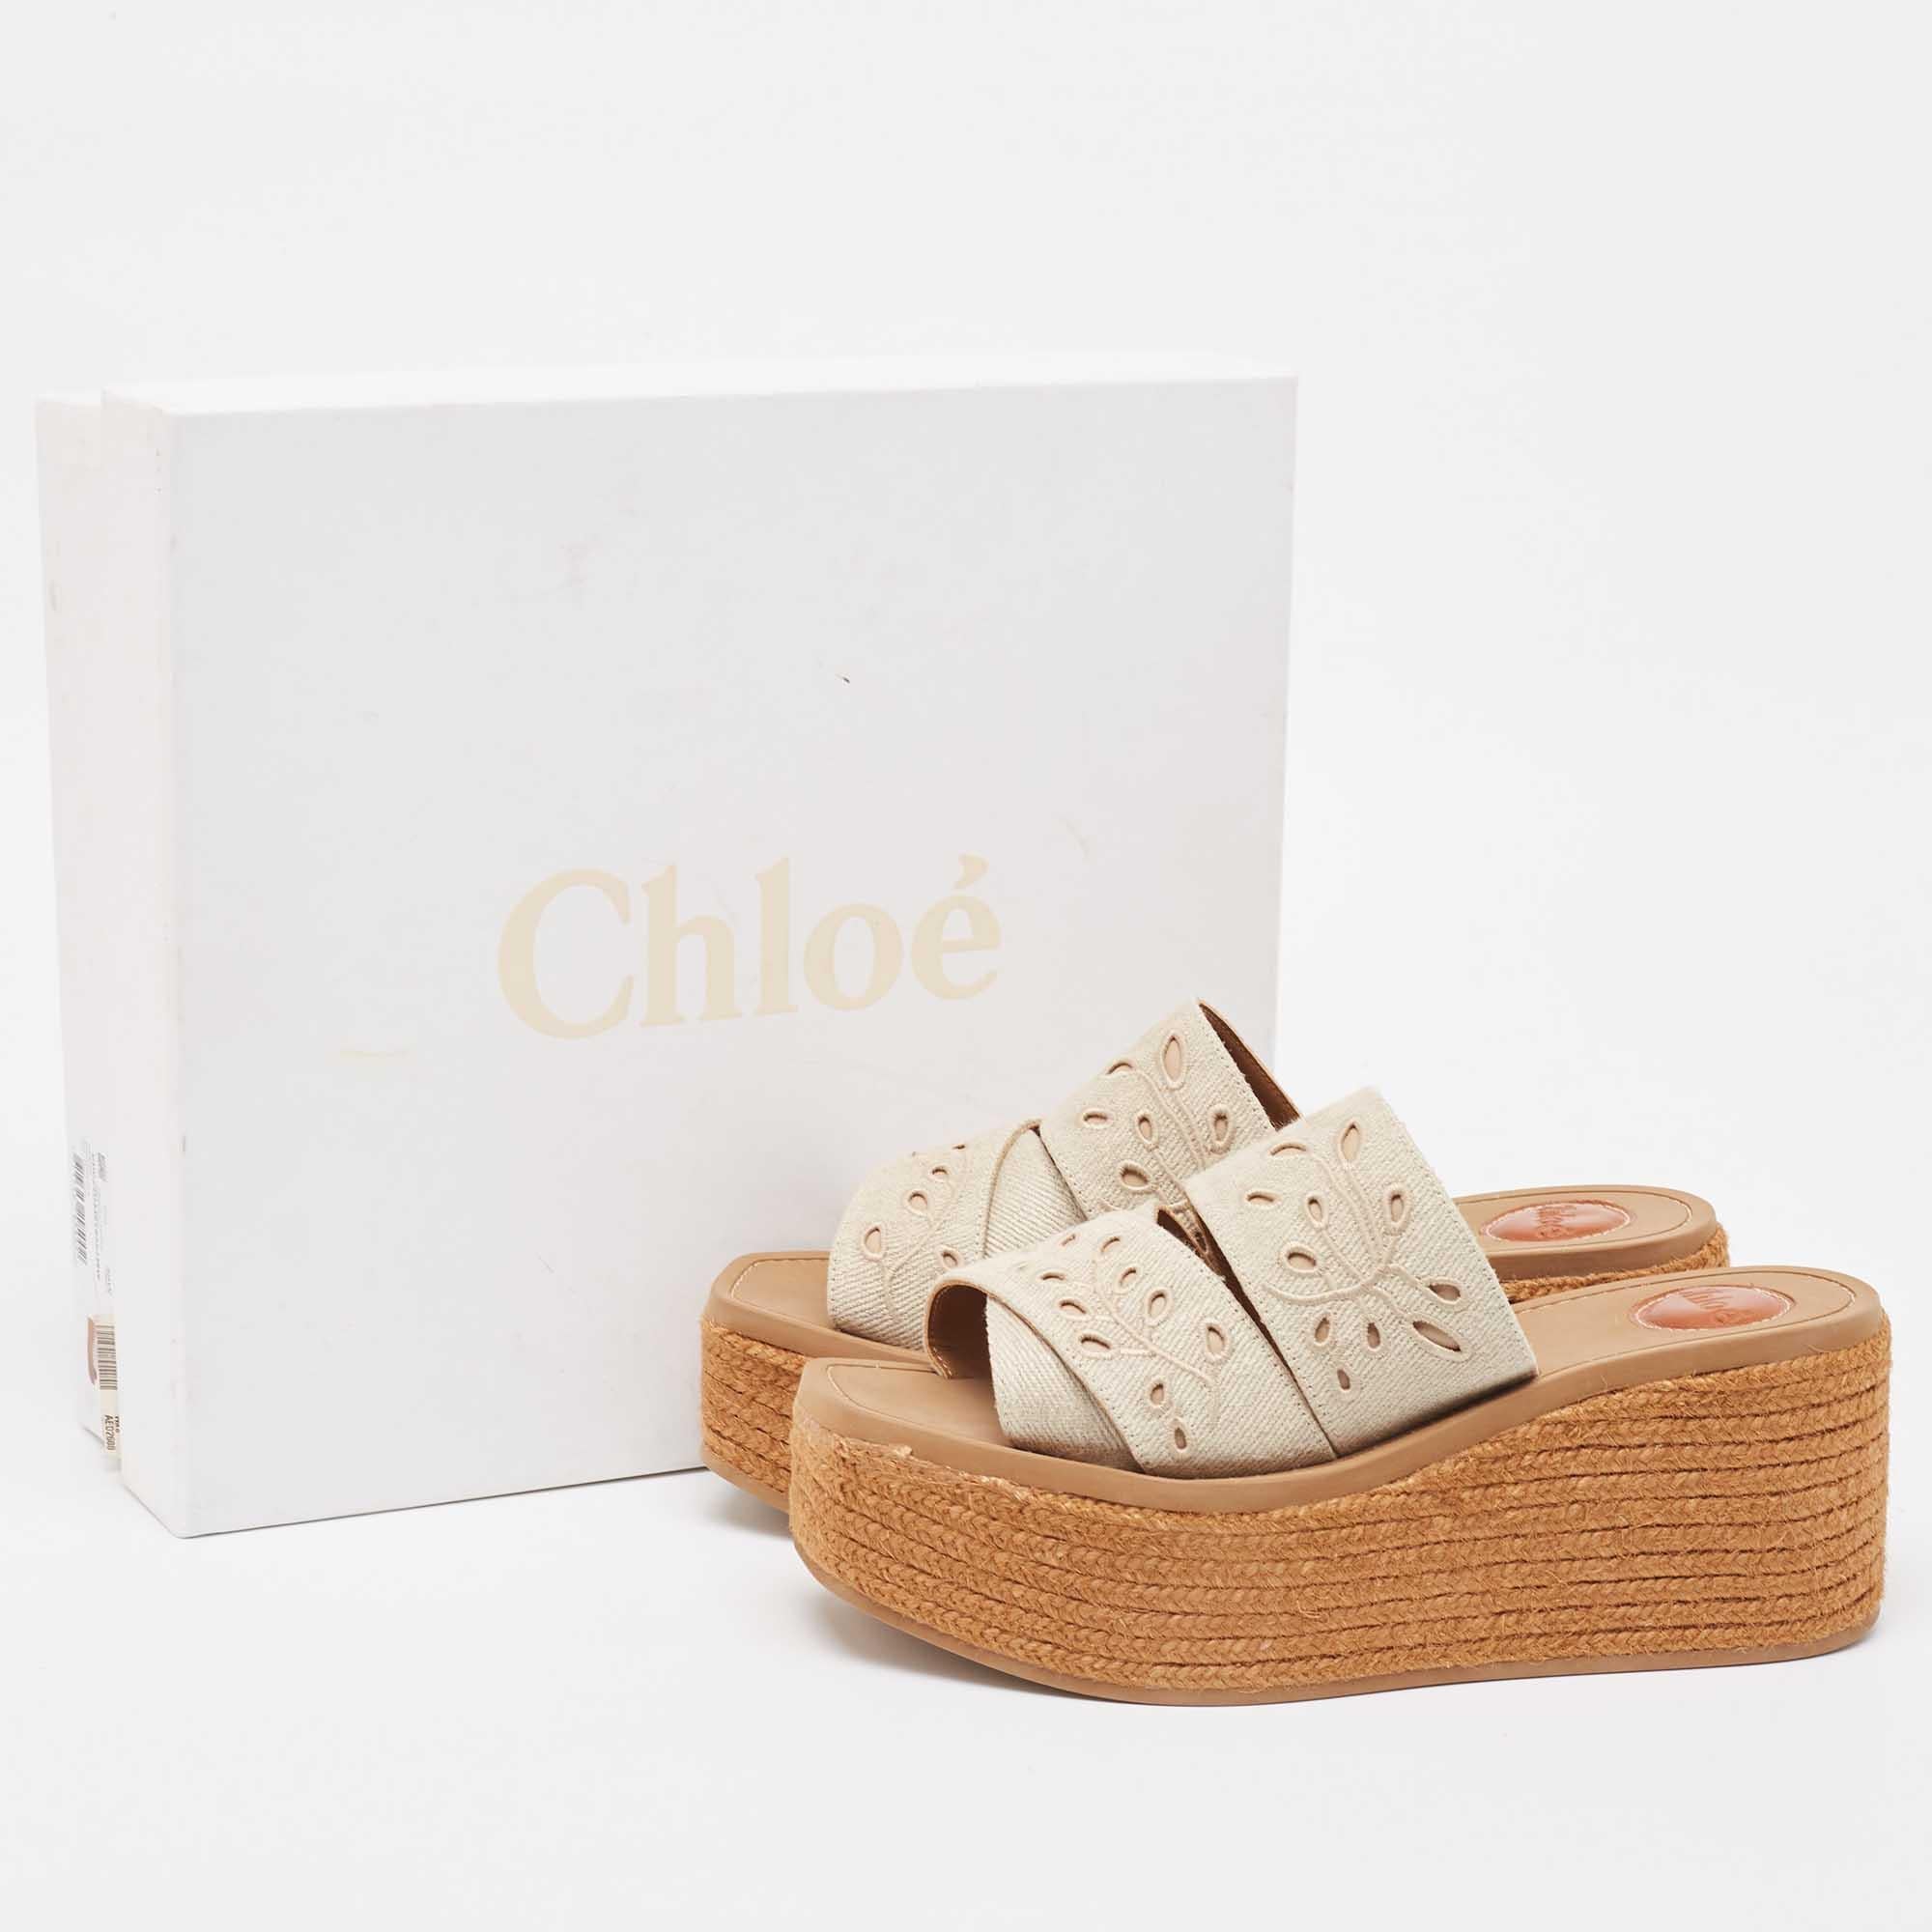 Chloe Beige Laser Cut Canvas Wedge Platform Espadrille Slide Sandals Size 38 For Sale 5